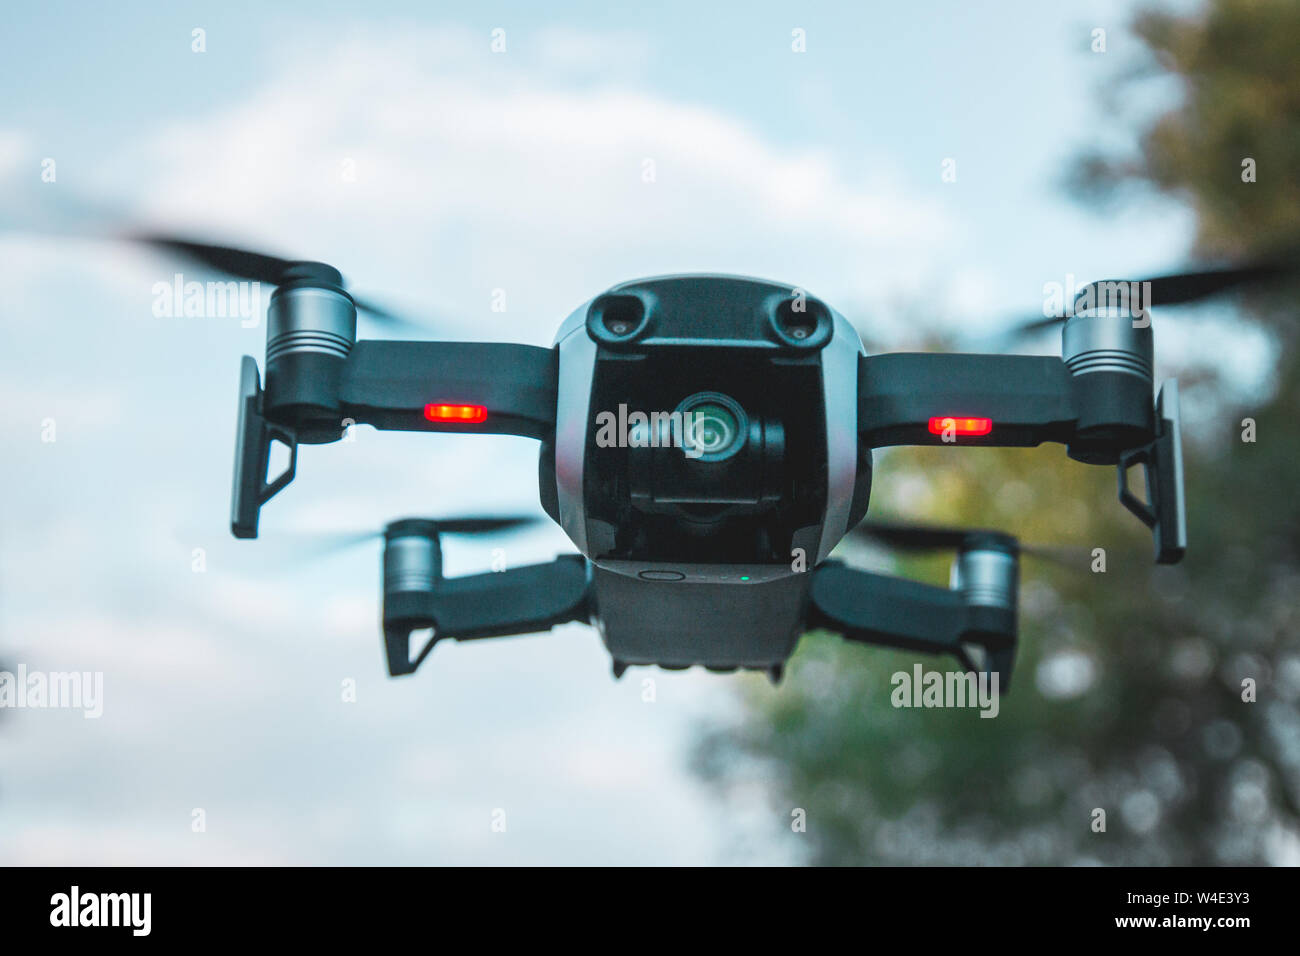 Vilnius, Litauen - 8. Juni 2019: DJI MAVIC LUFT - Drone mit Kamera, auf einem 3-Achs Gimbal montiert. Stockfoto